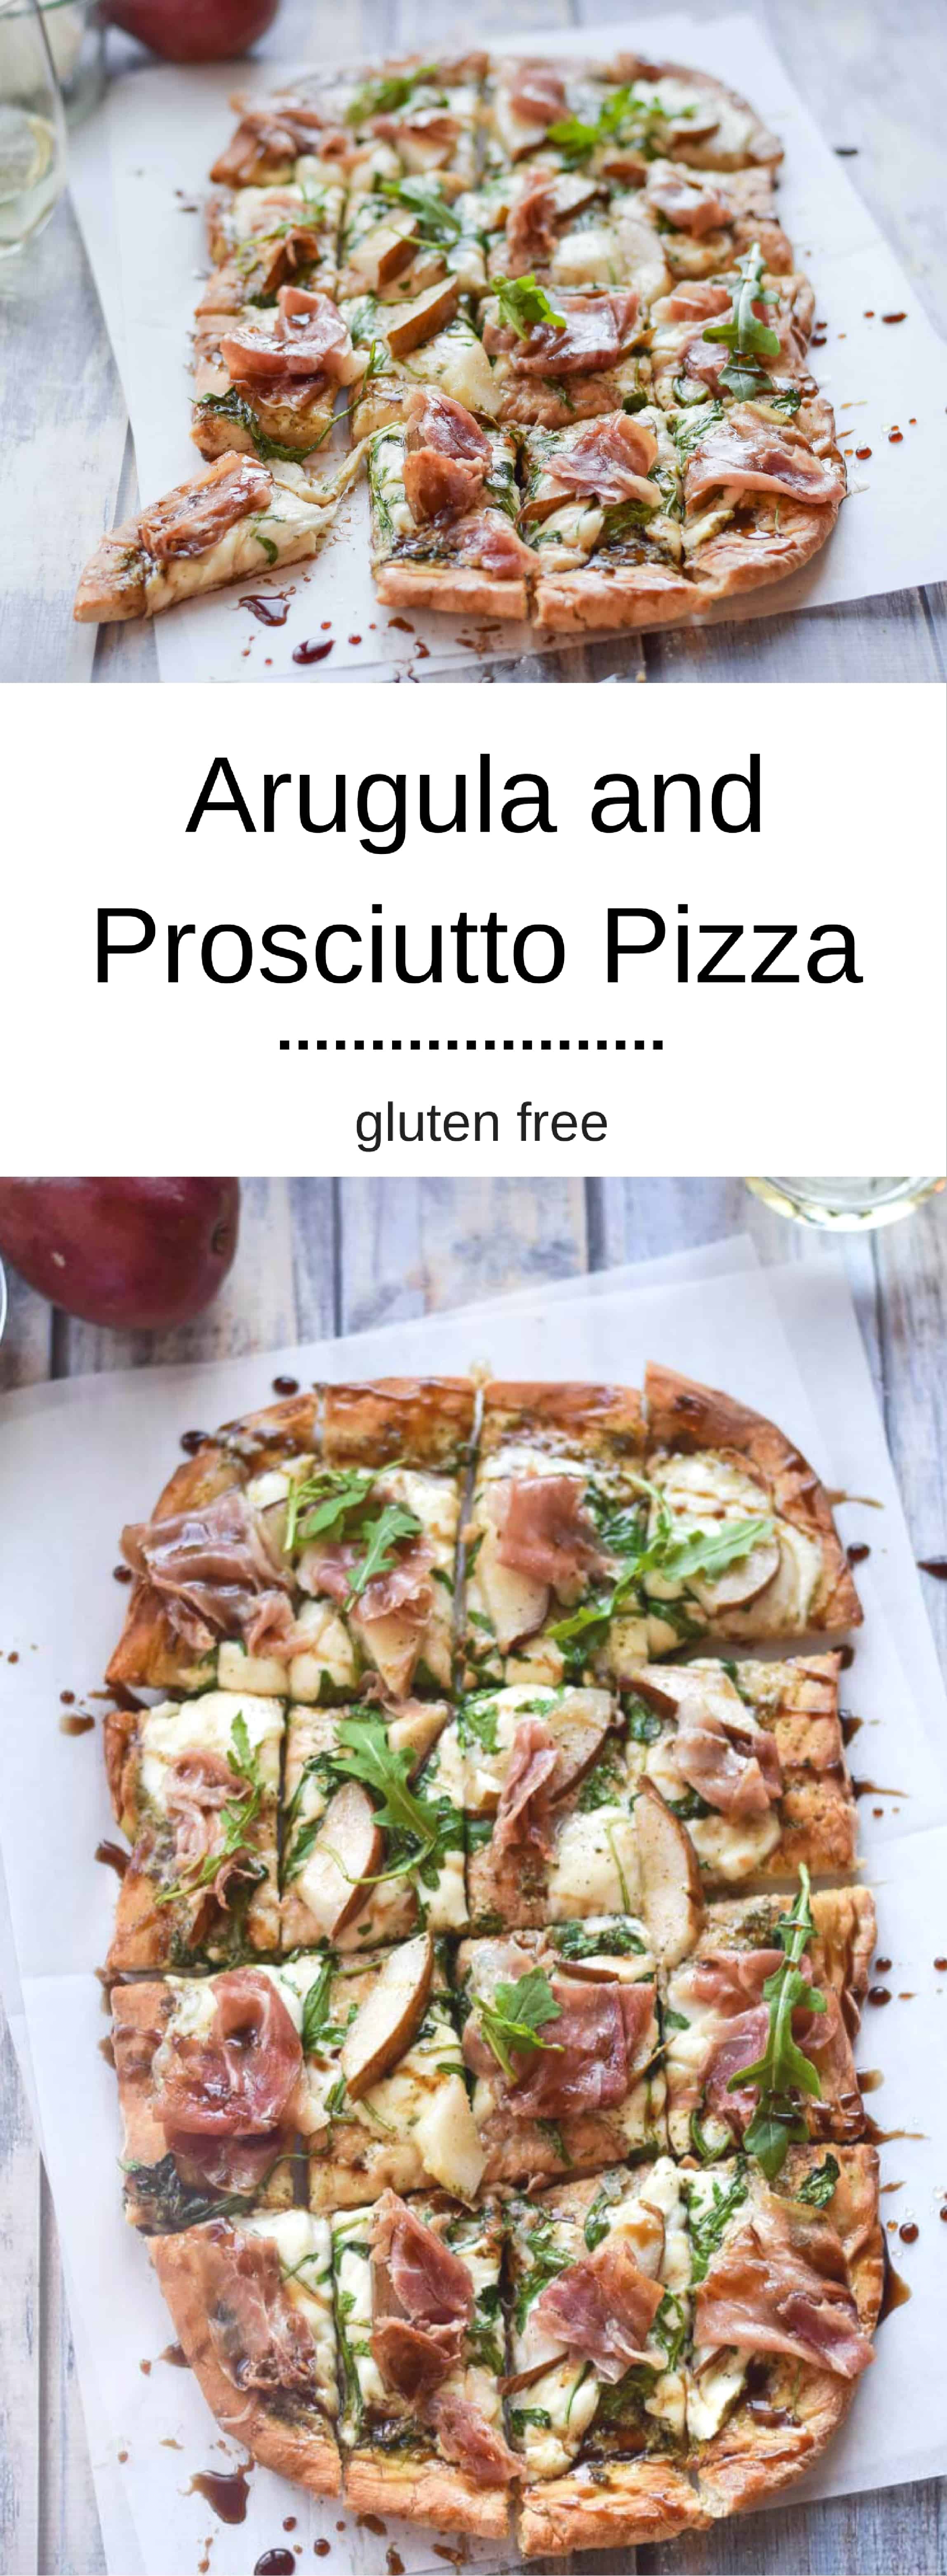 Arugula and Prosciutto Pizza